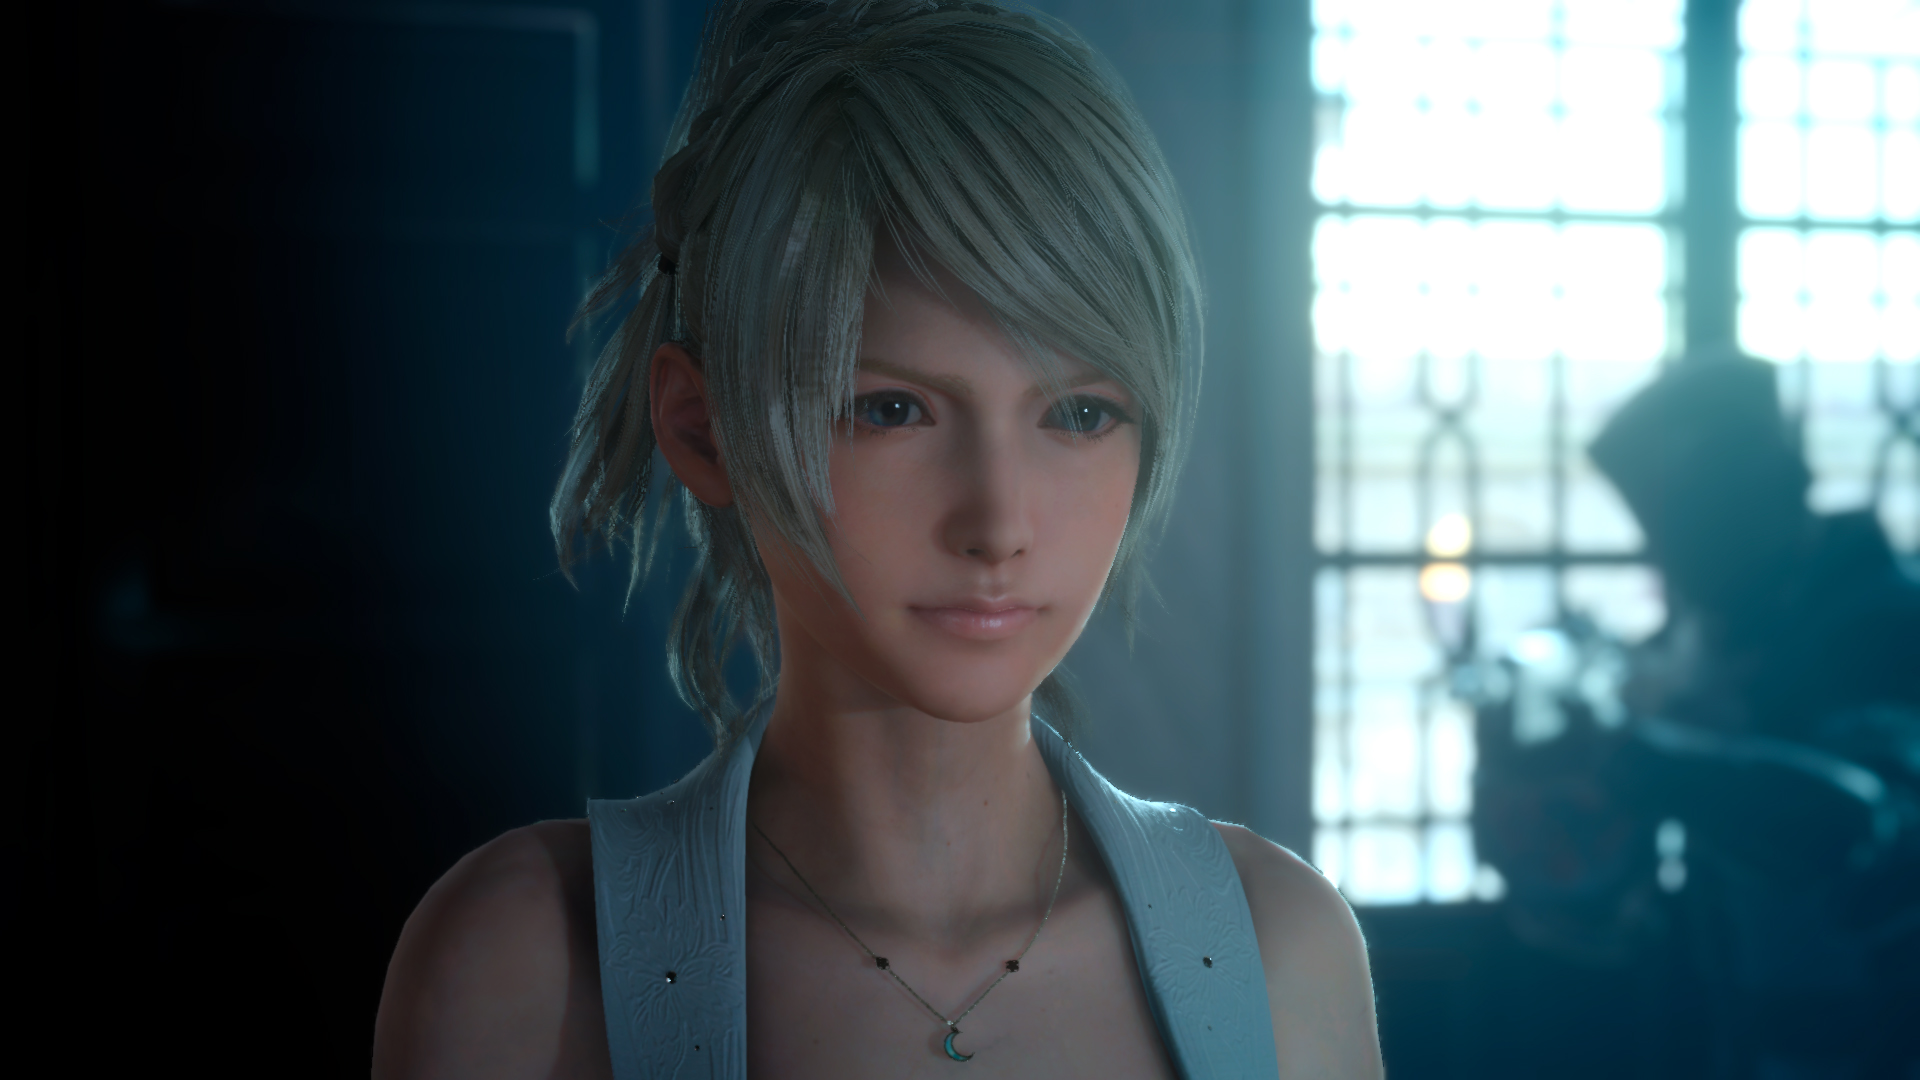 Immagine pubblicata in relazione al seguente contenuto: Square Enix pubblica un nuovo gameplay trailer di Final Fantasy XV | Nome immagine: news23718_Final-Fantasy-XV-Screenshot_4.jpg